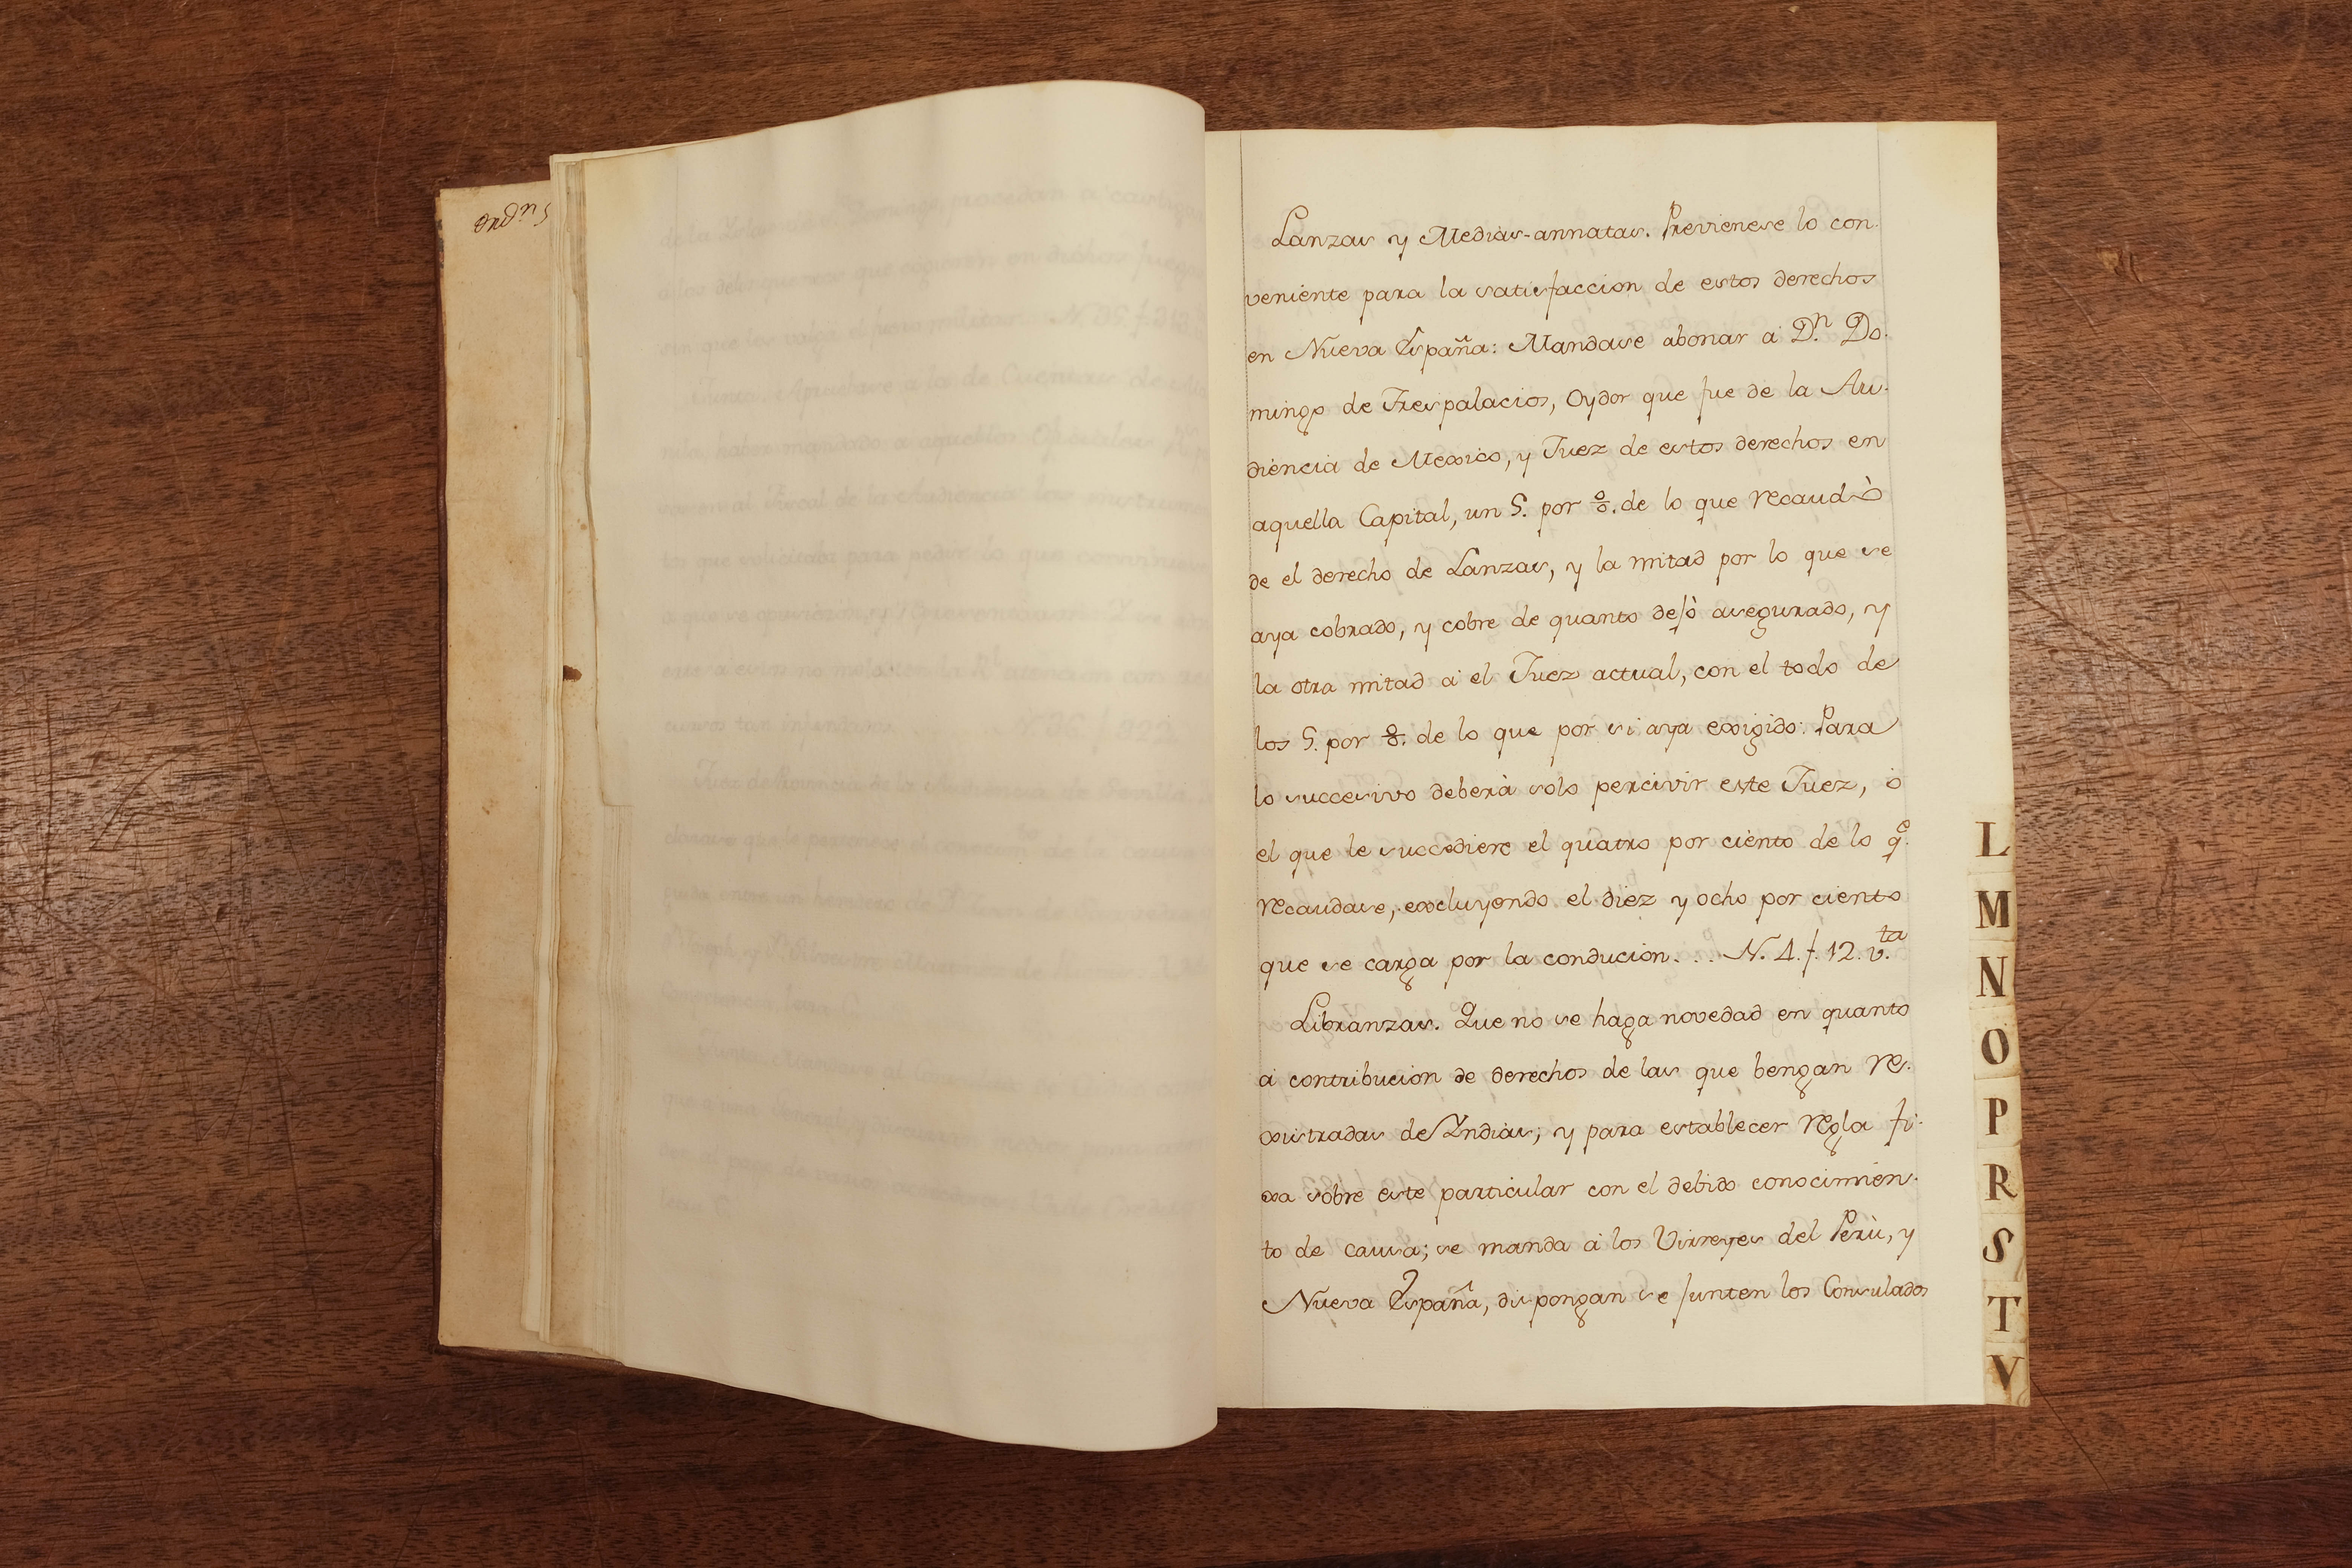 Coleccion de Consultas. Bound volume of 42 manuscript consultations, 1767 - Image 9 of 27